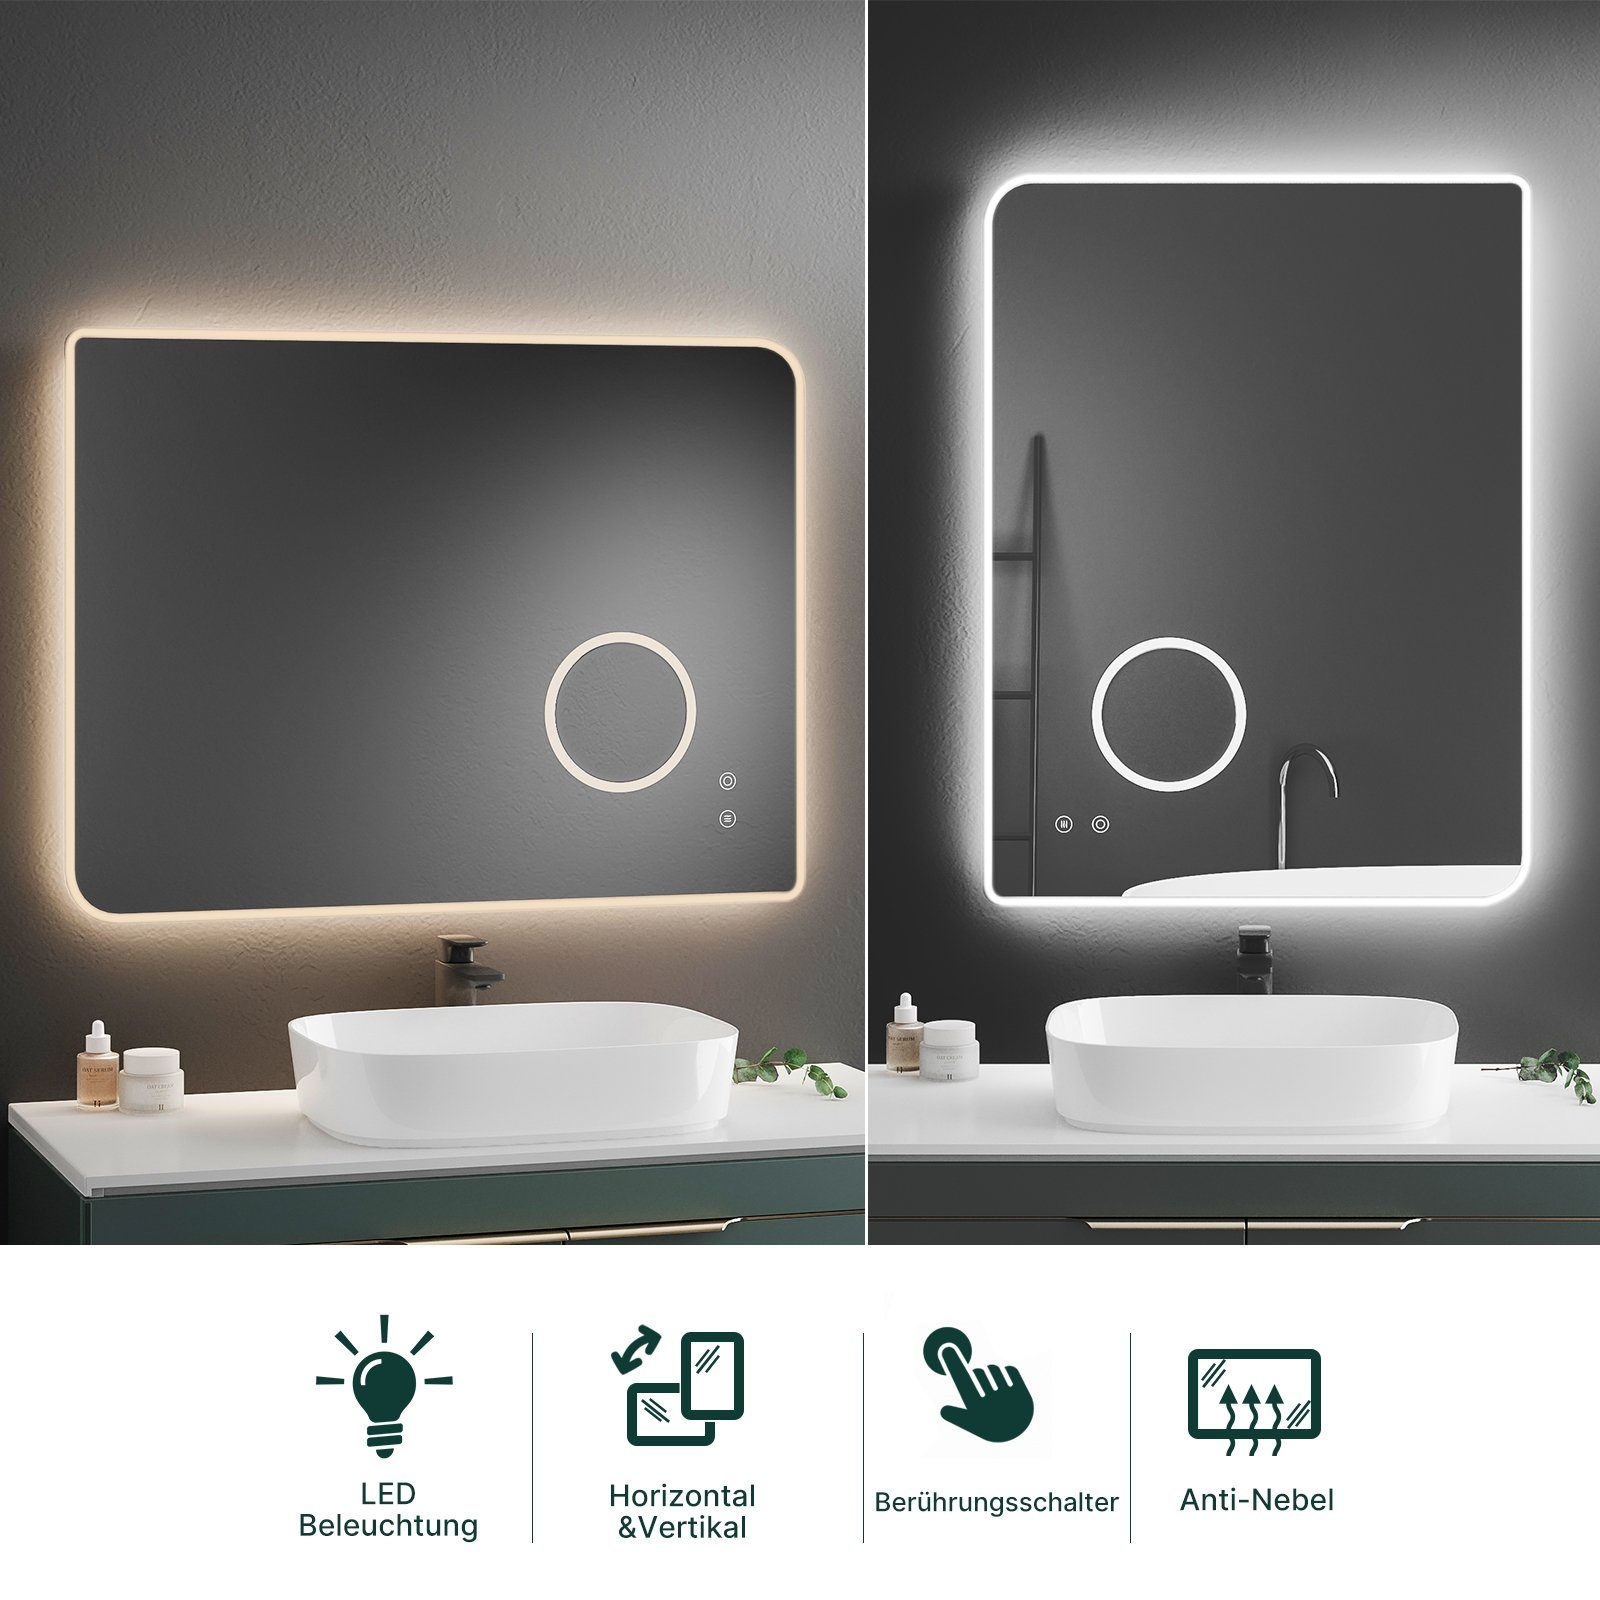 80x60 mit Badspiegel Meerveil cm Antibeschlage, Touch Beleuchtung, Schalter, LED Badezimmerspiegel,